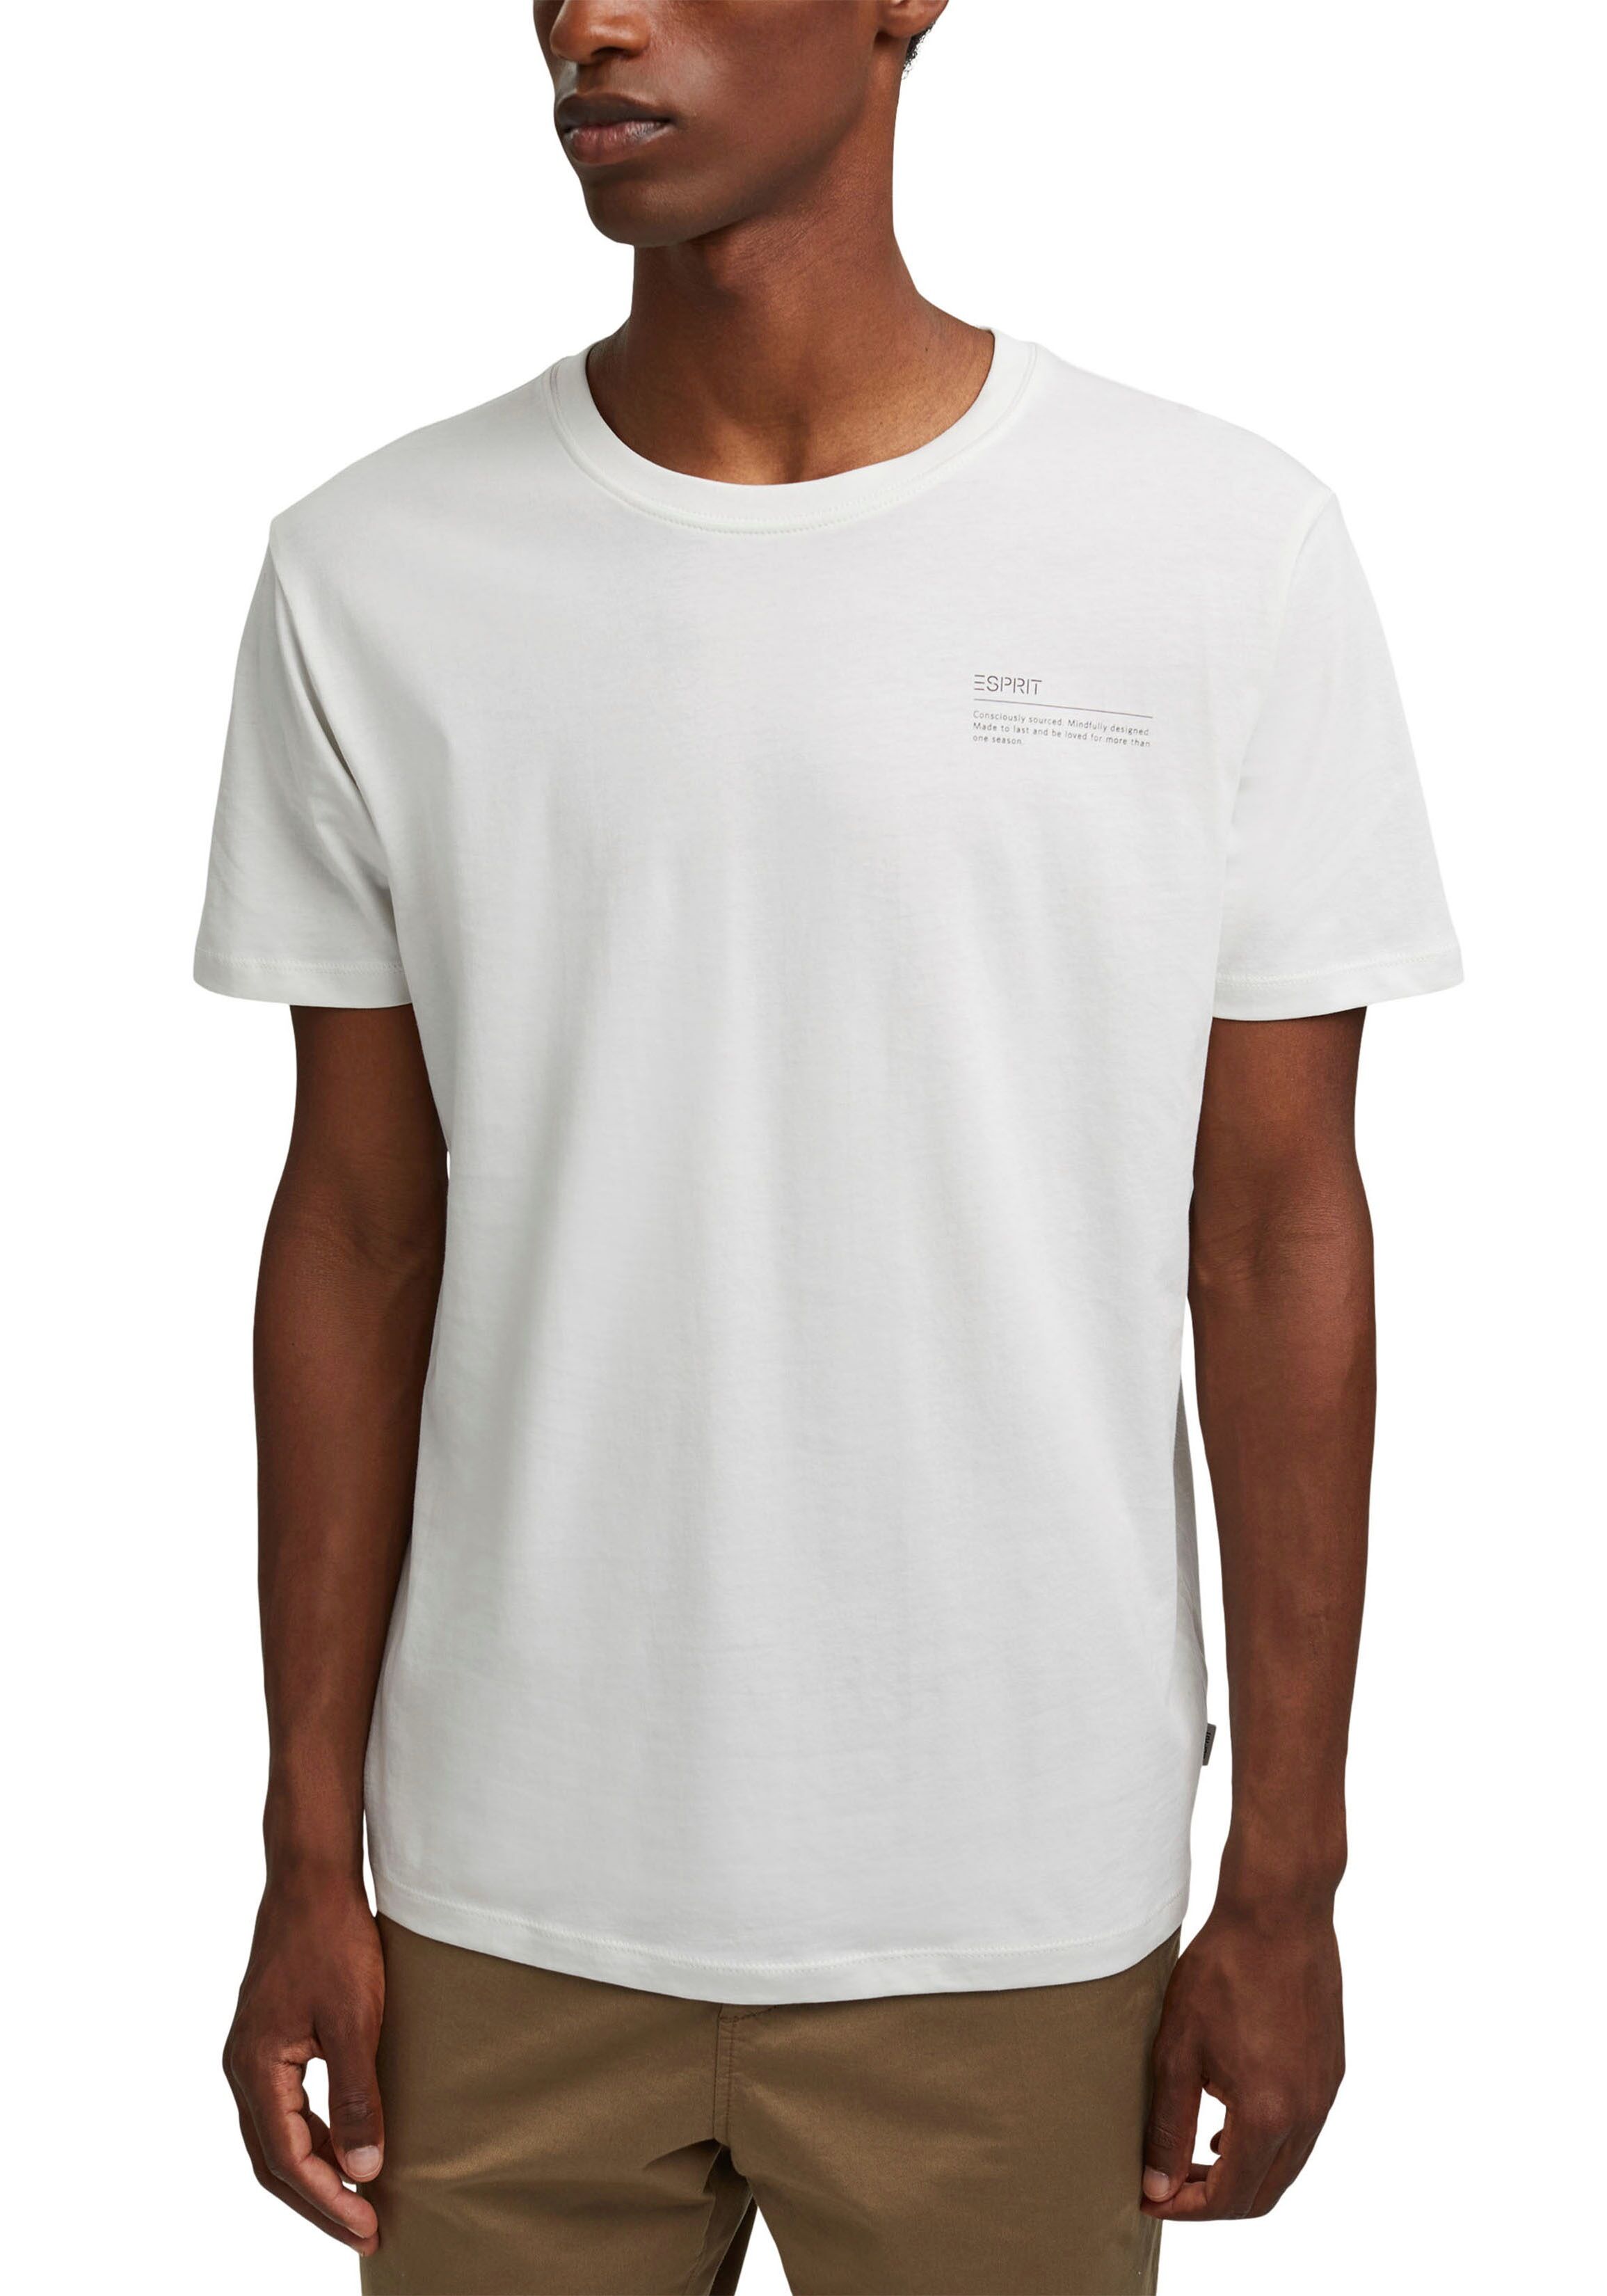 Esprit Print-Shirt, mit kleinem Druck weiss  L (52) M (48/50) S (46) XL (54/56) XXL (58)